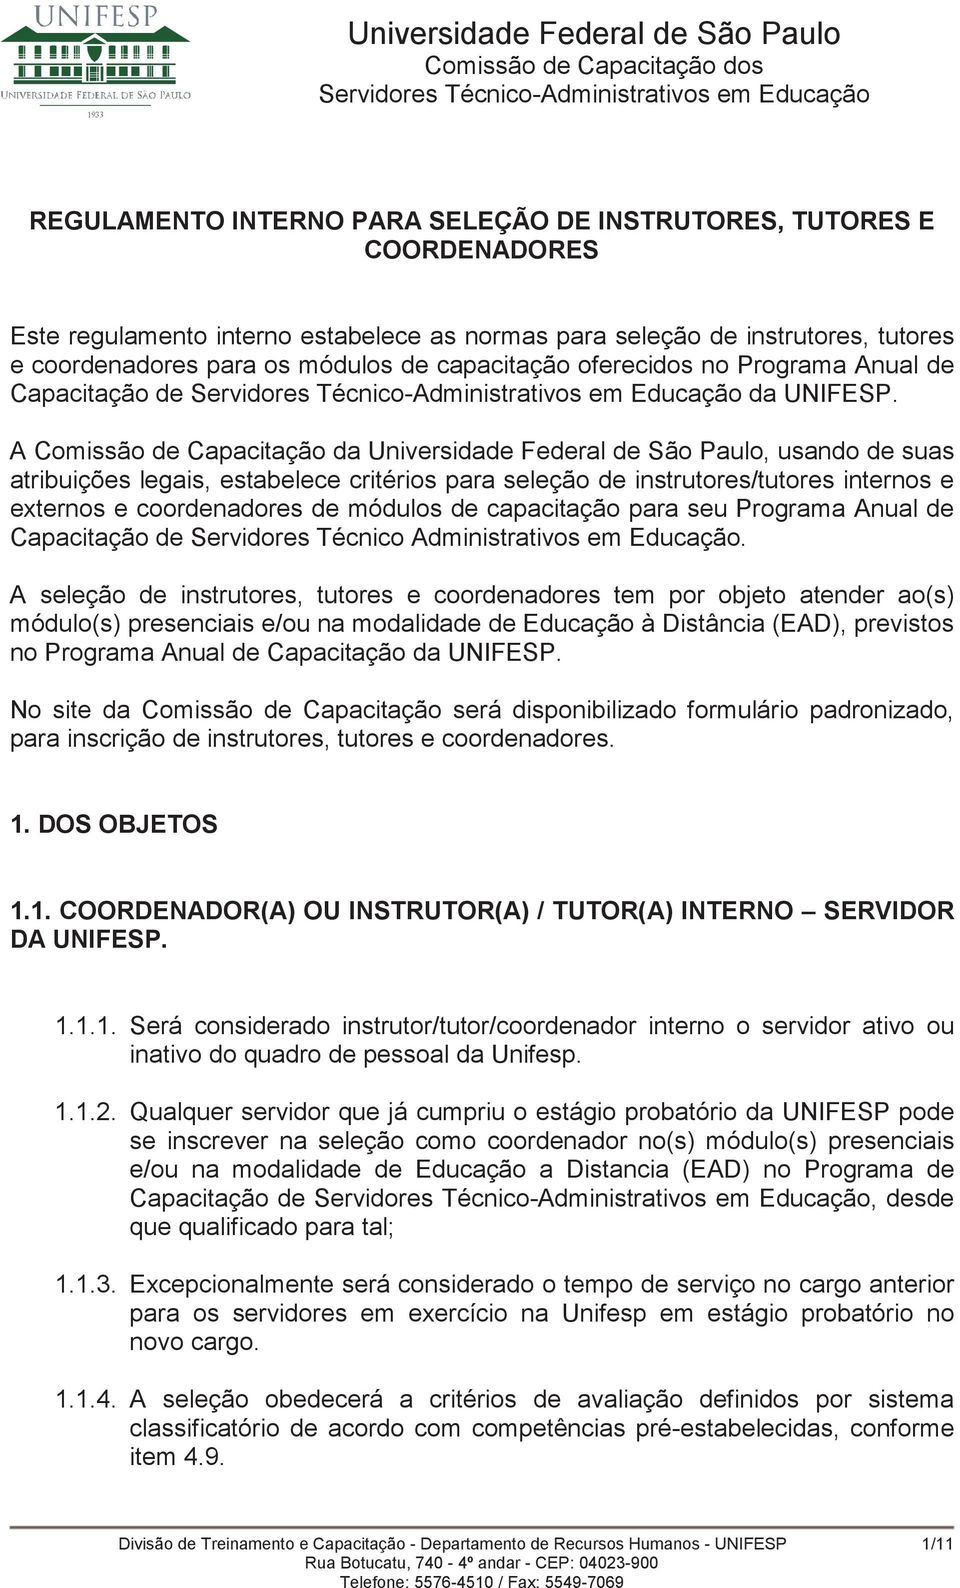 A Comissão de Capacitação da Universidade Federal de São Paulo, usando de suas atribuições legais, estabelece critérios para seleção de instrutores/tutores internos e externos e coordenadores de